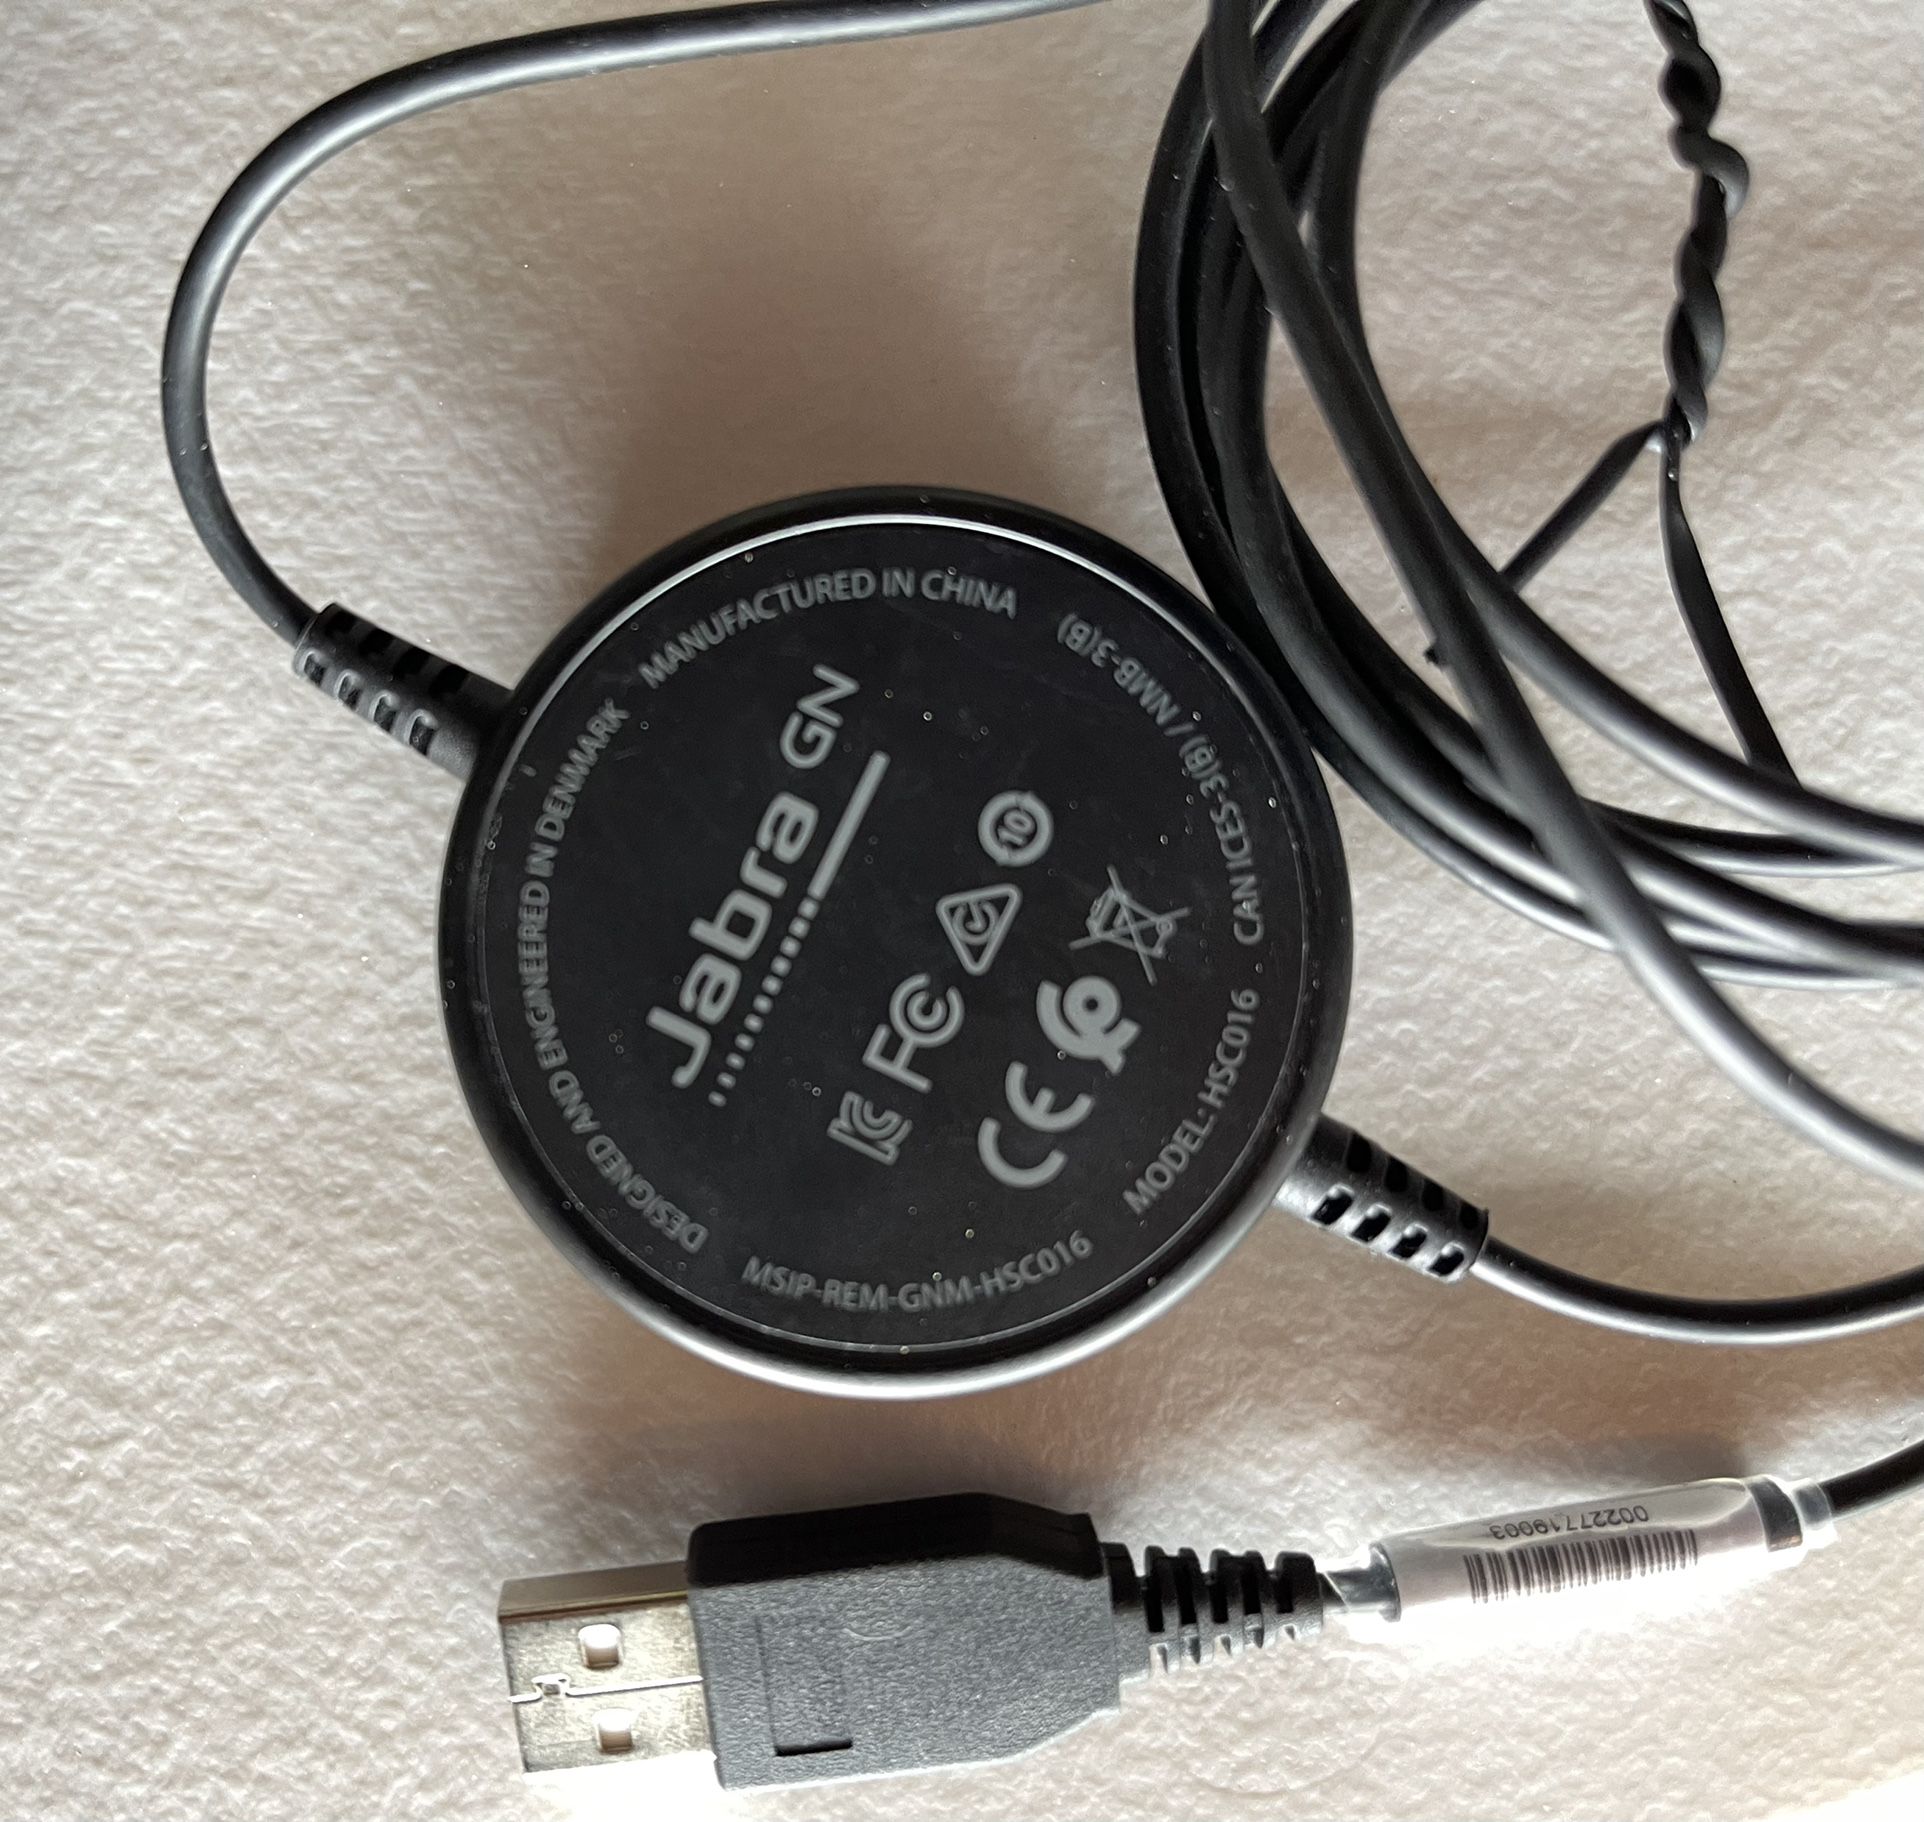 Jafra Evolve 20SE USB Stereo Headset + Logitech B910 HD WebCam